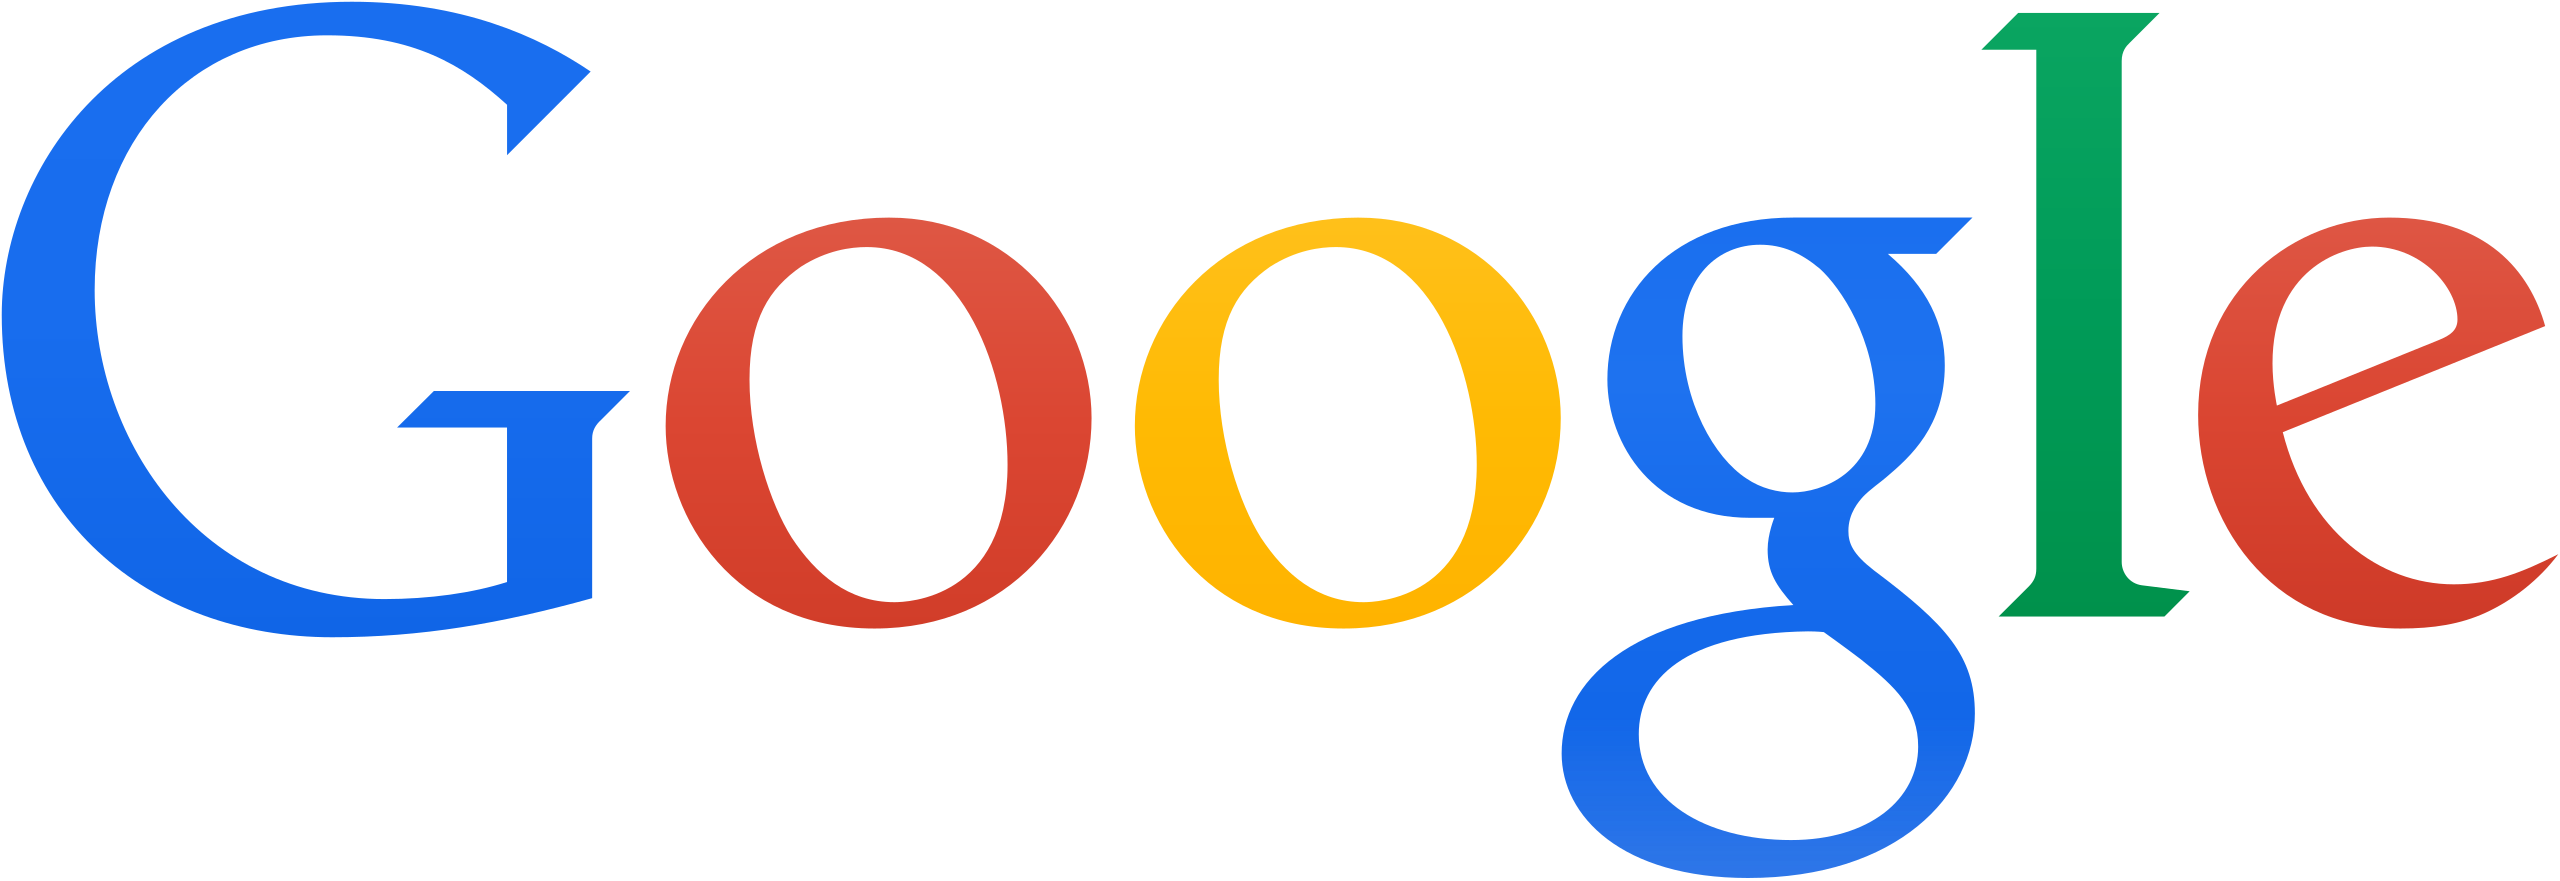 Logo_2013_Google.png